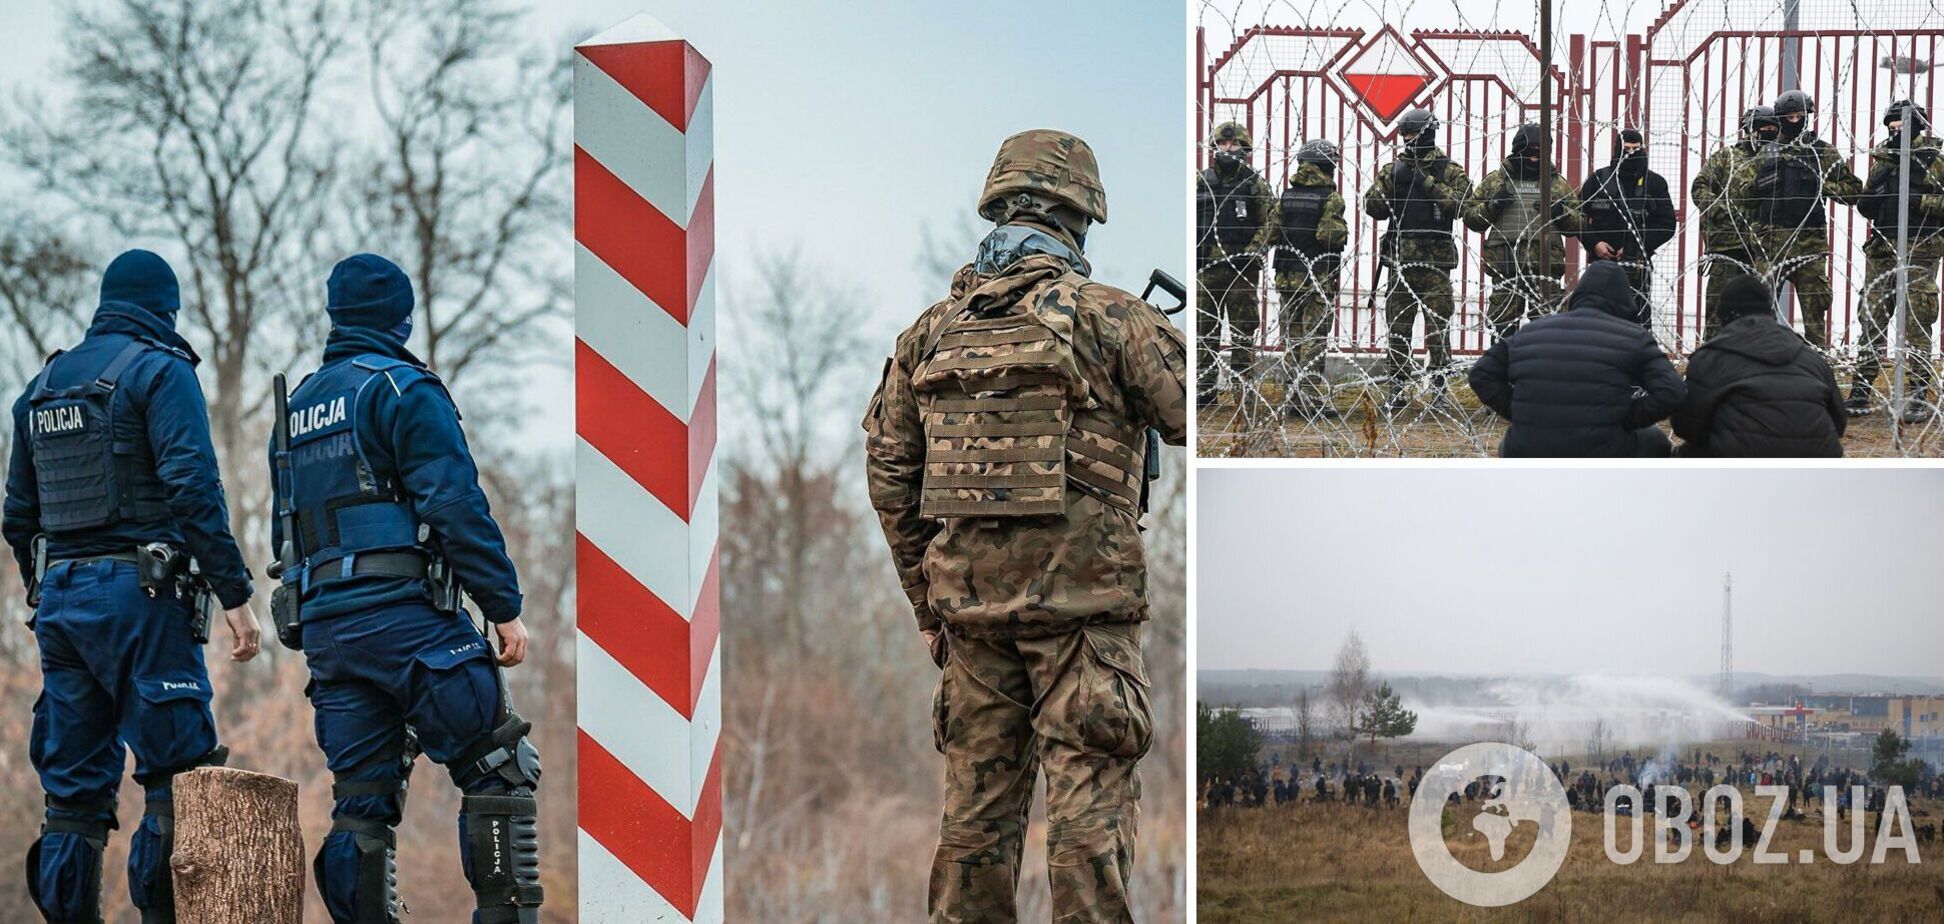 Чехия планирует отправить военных к границе Польши с Беларусью: названа причина